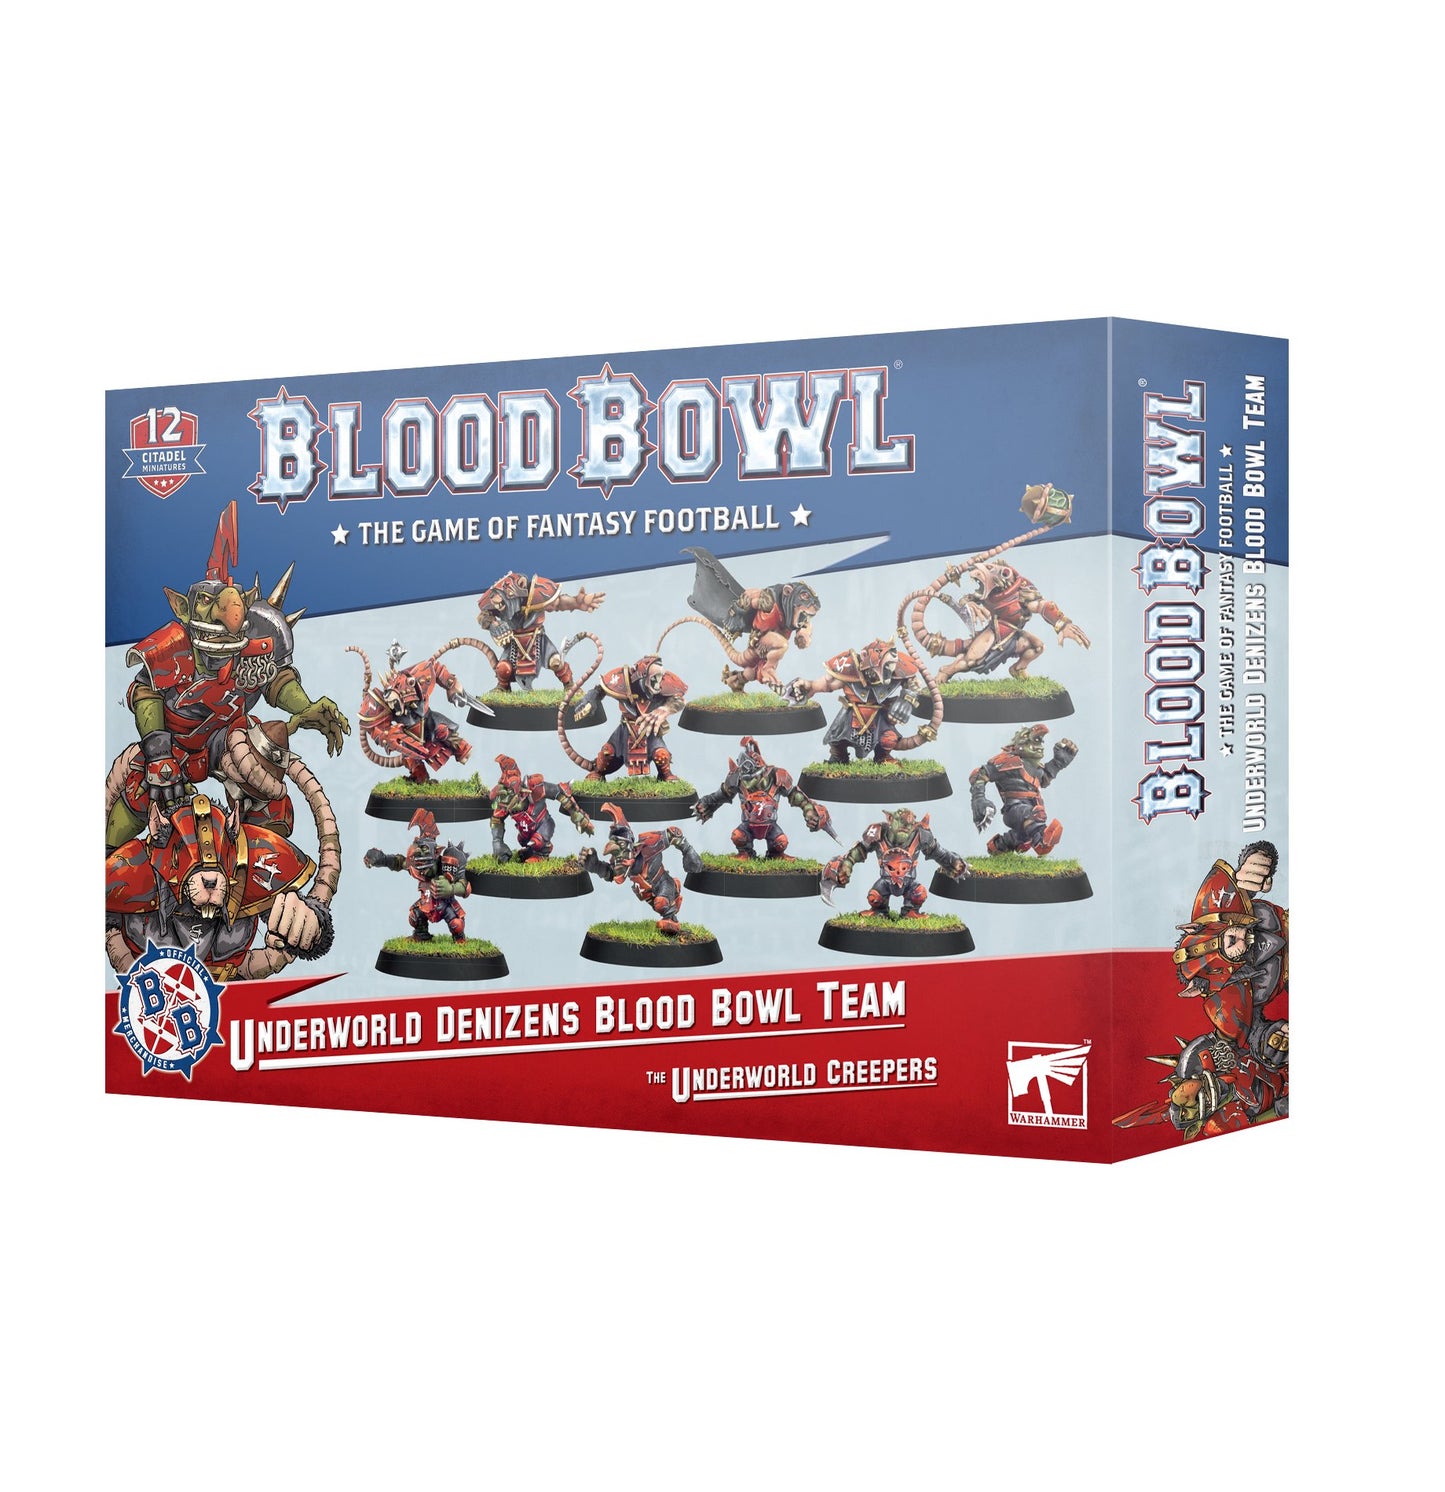 Blood Bowl: Underworld Denizen's team